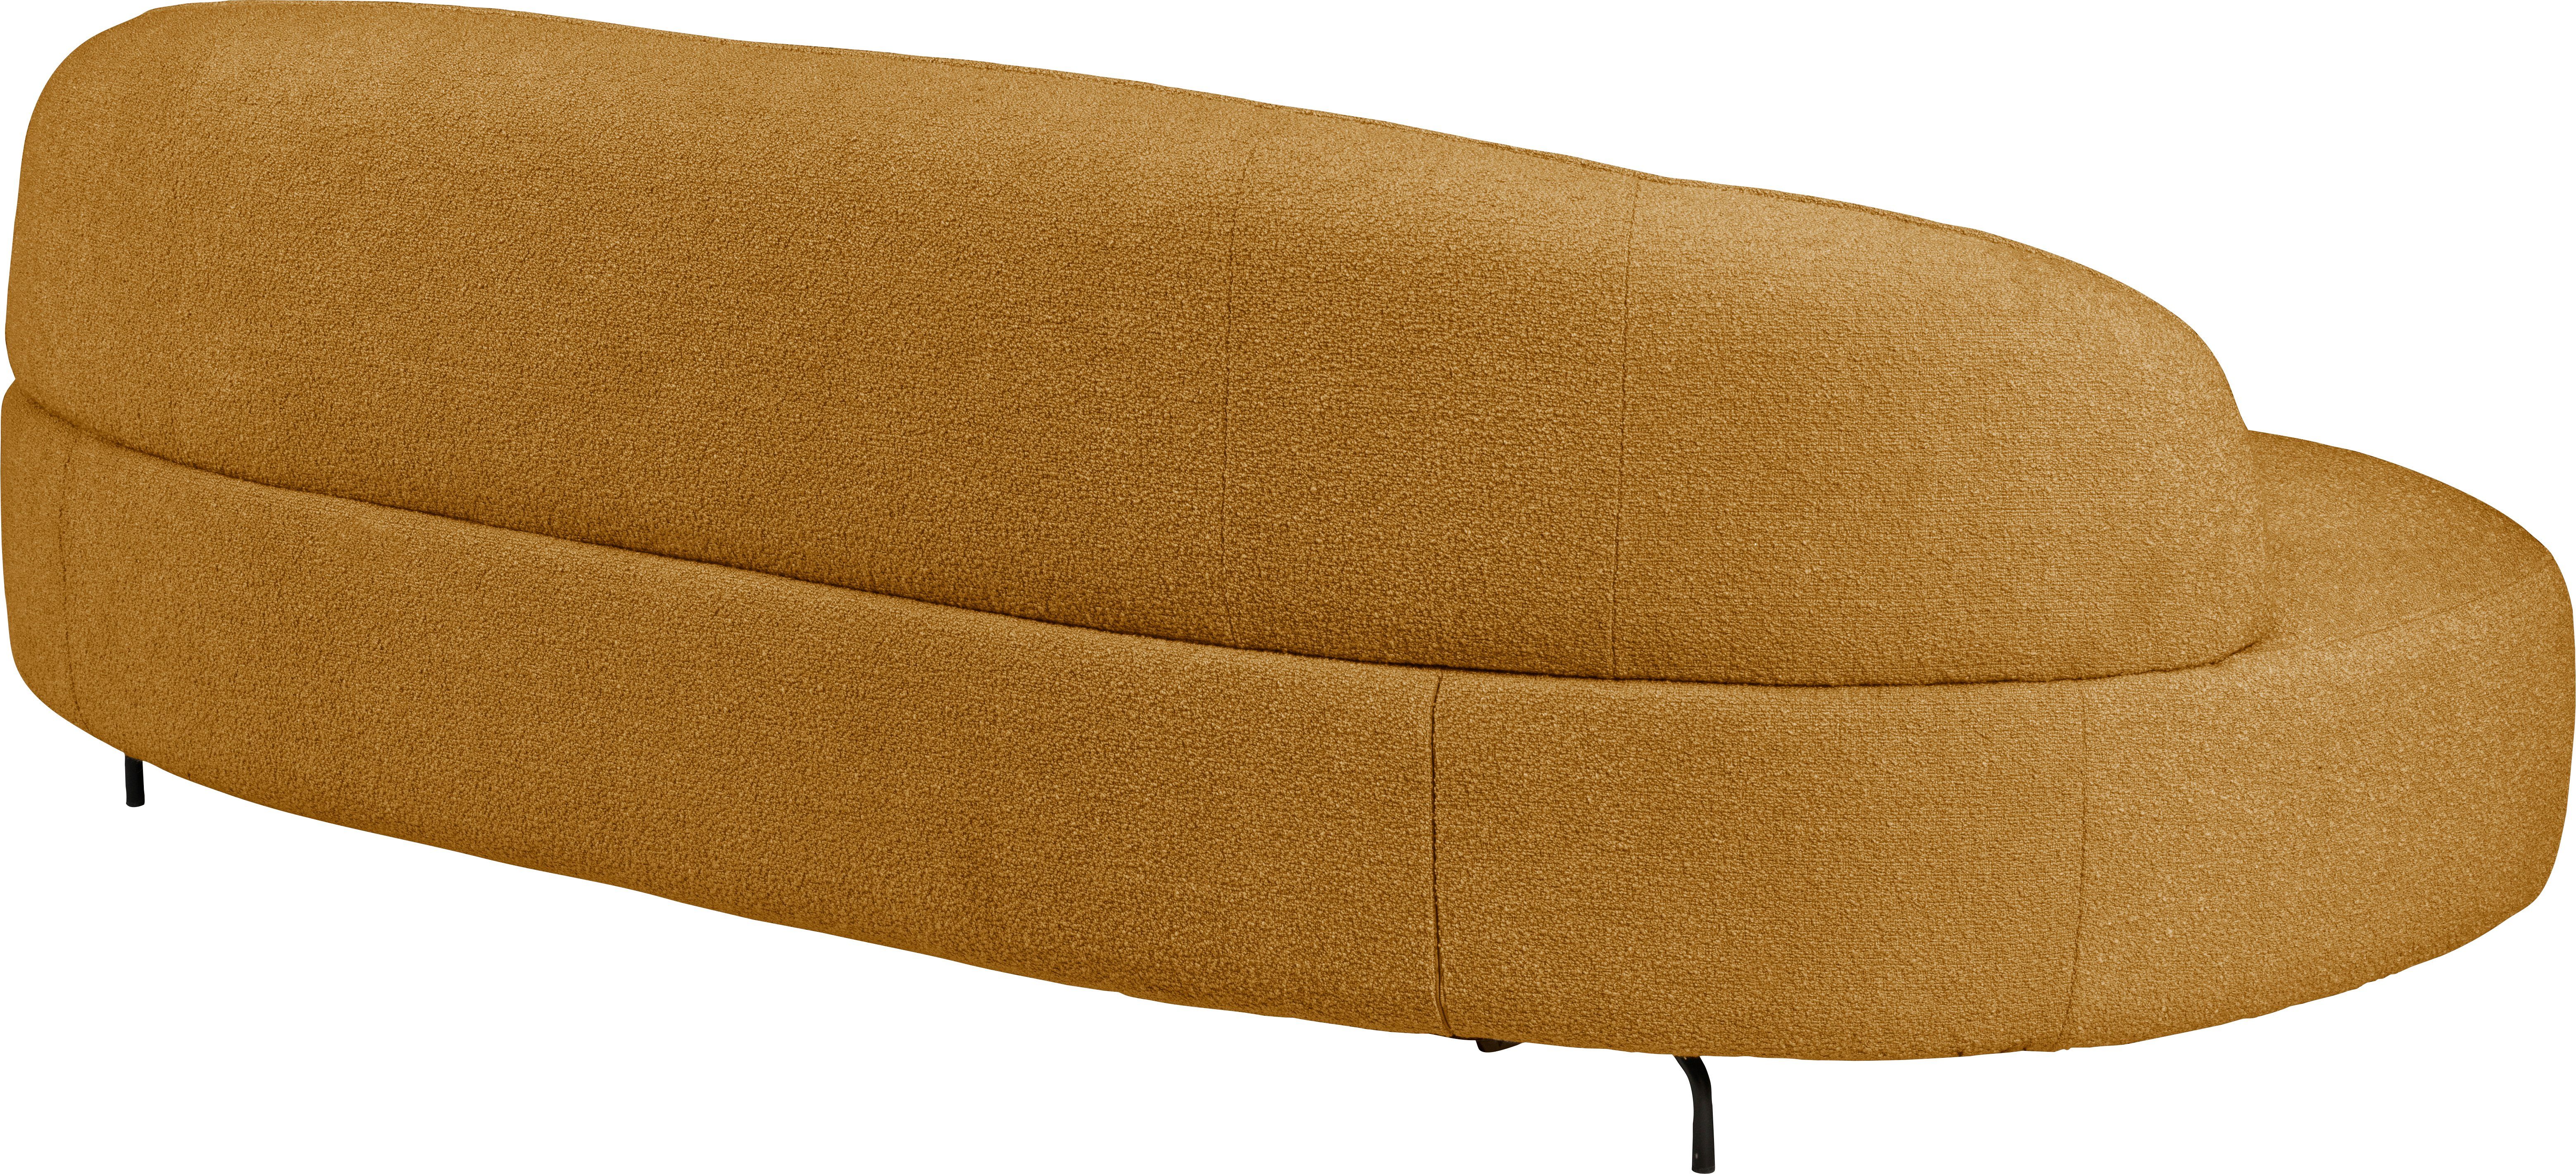 furninova Sofa Design mustard organisch skandinsvischen im geformt, Aria,